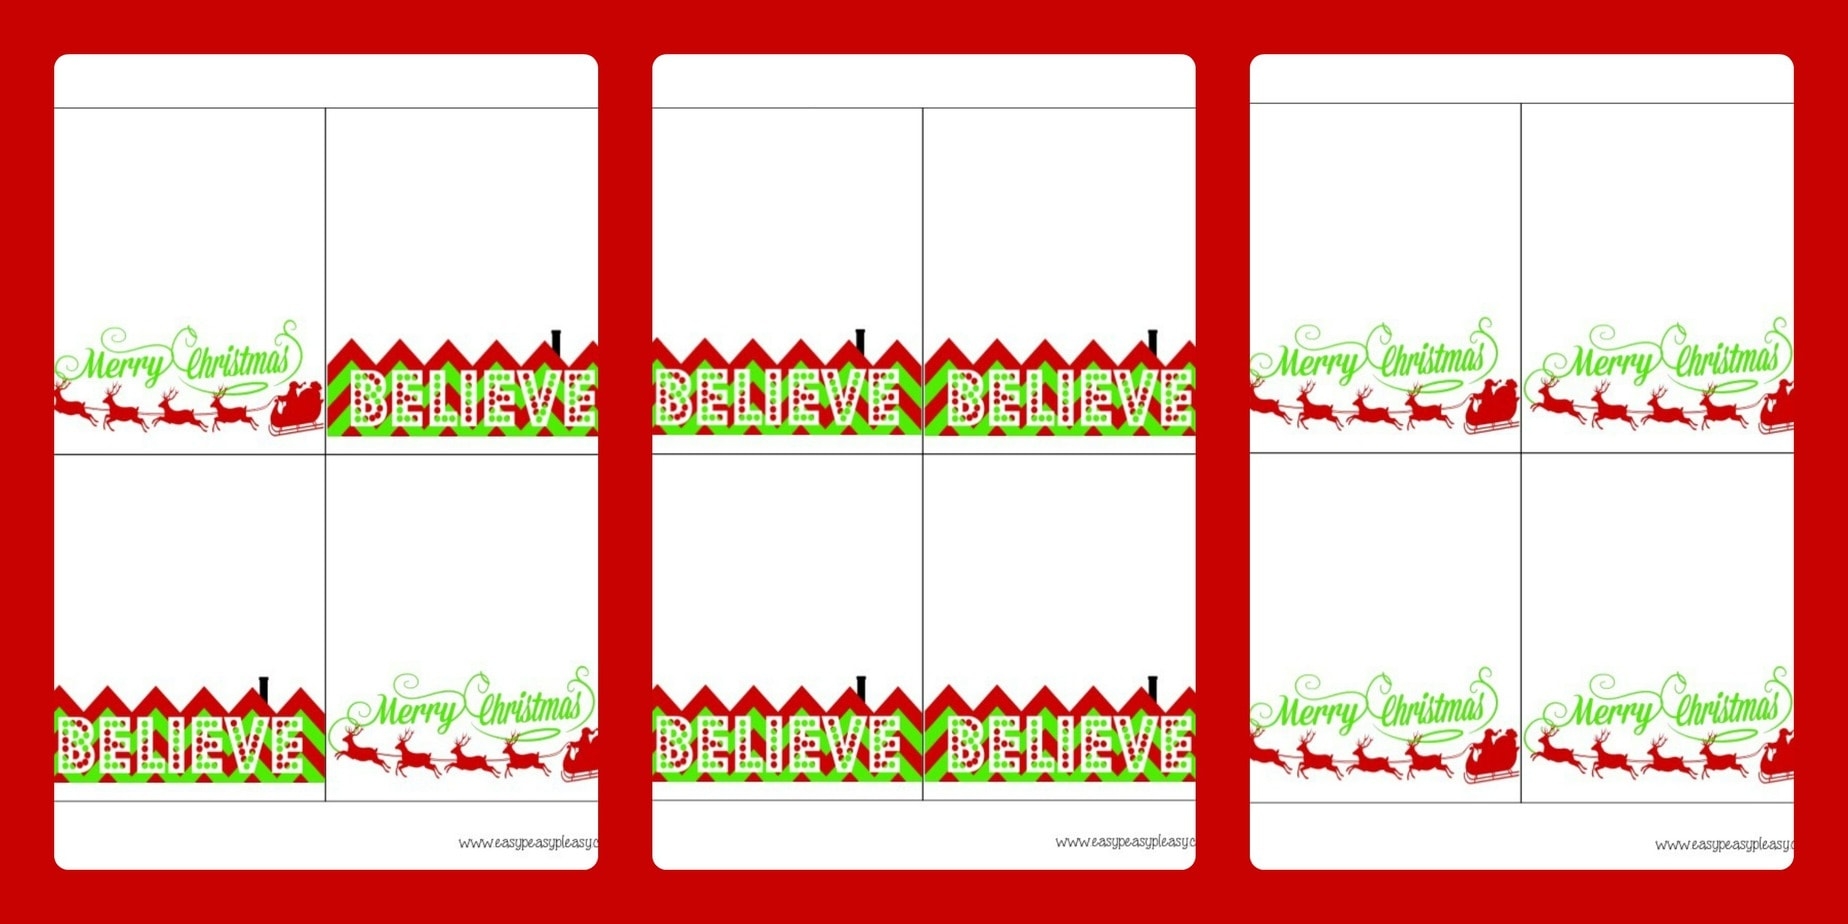 3 Free Printable Christmas Treat Bag Toppers Easy Peasy Pleasy - Free Printable Christmas Bag Toppers Templates